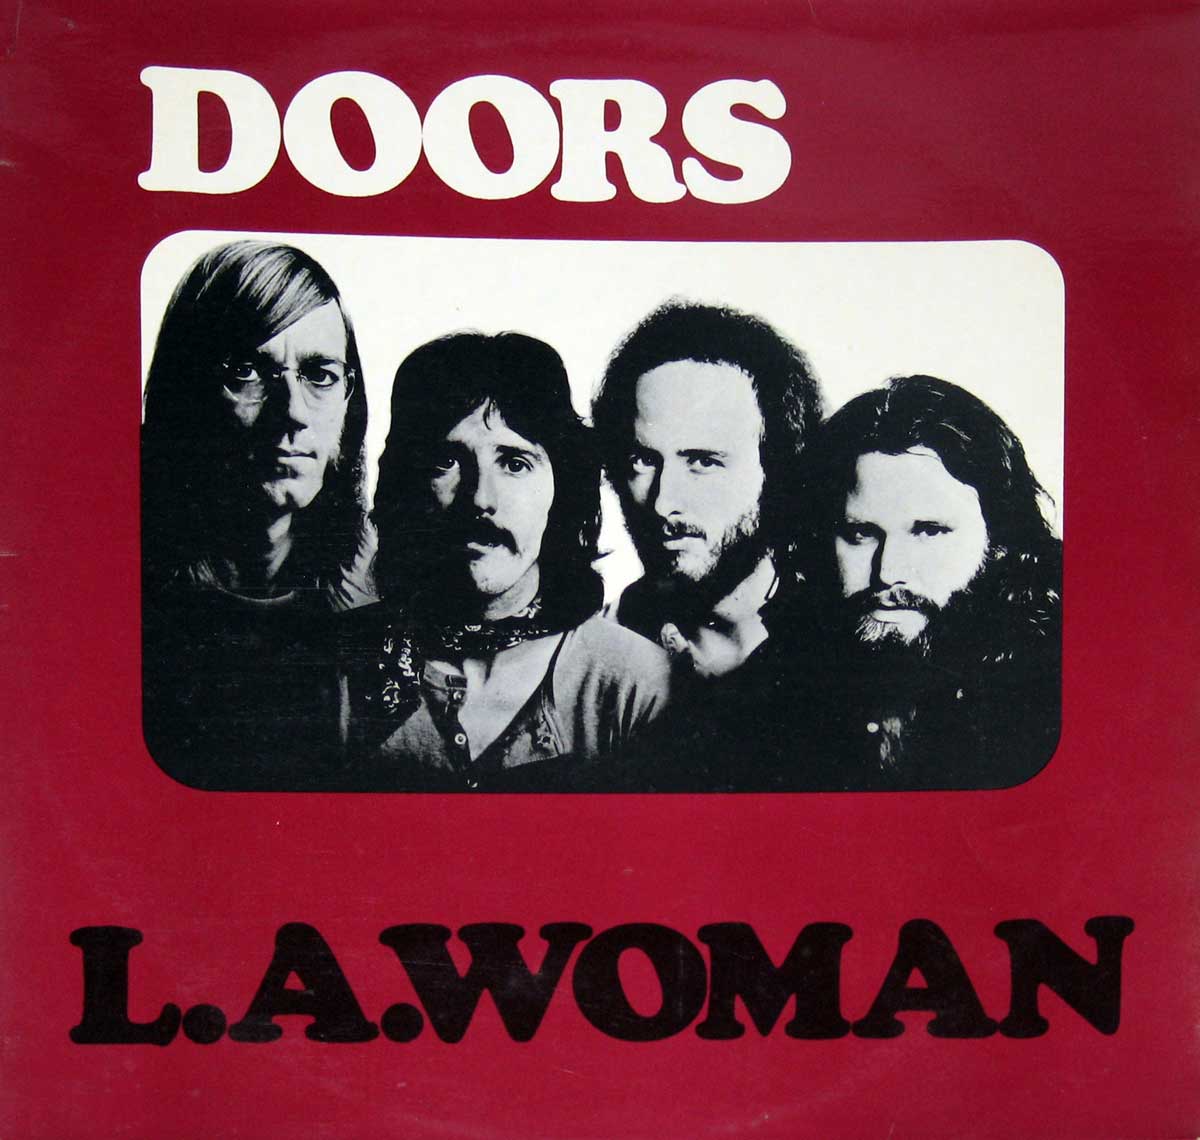 large album front cover photo of: he Doors L.A. Woman European Release 12" VINYL LP ALBUM 